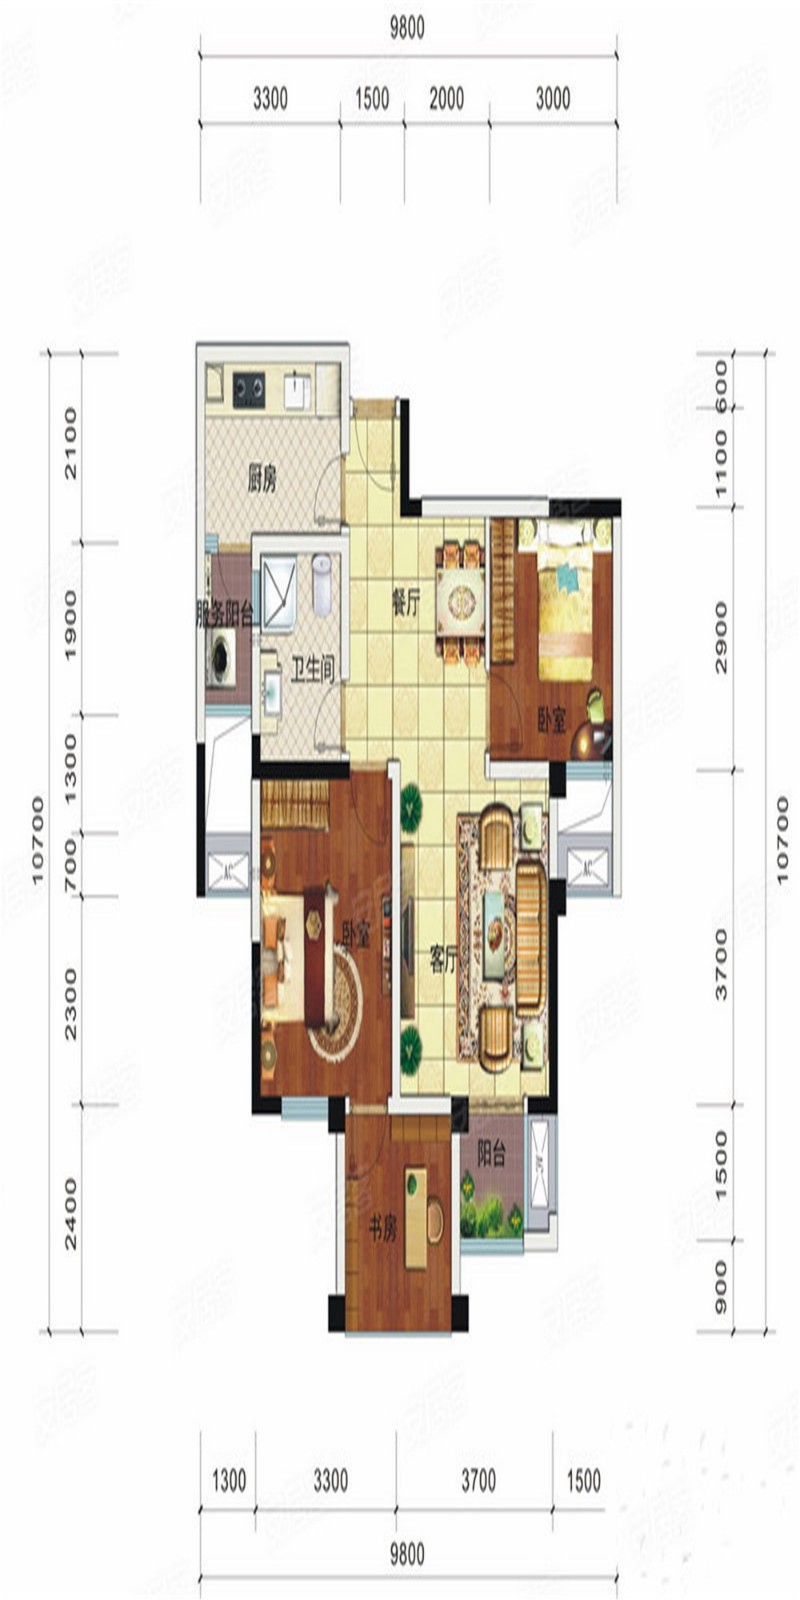 105现代三房装修效果图,海骏达 | 现代轻奢风装修案例效果图-美广网(图1)